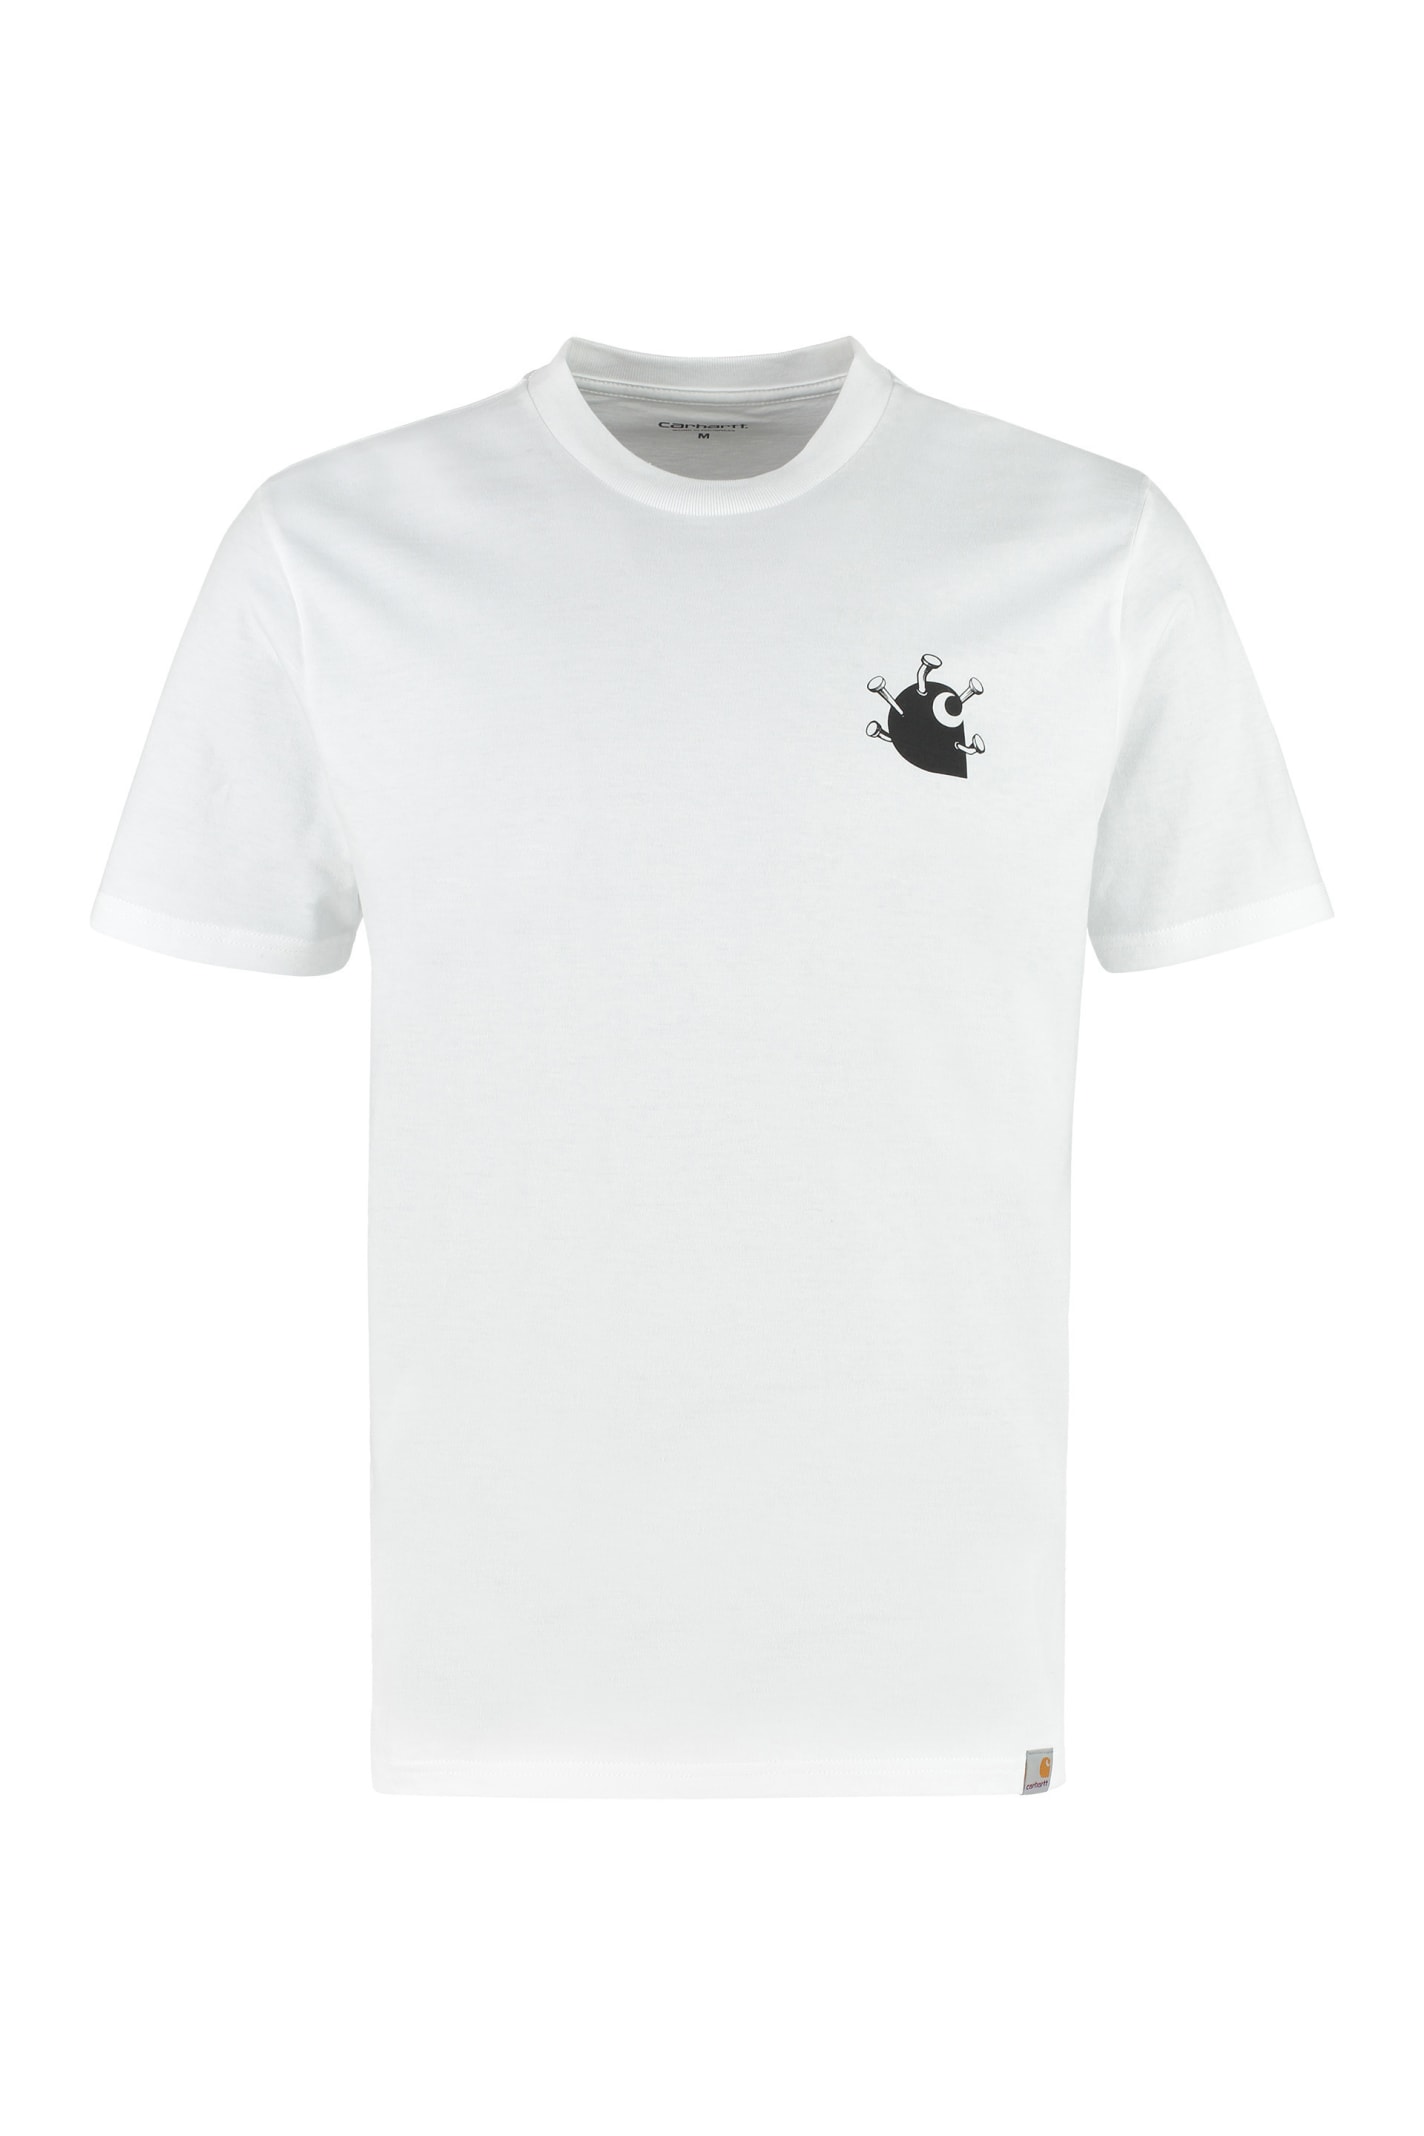 Carhartt Cotton Crew-neck T-shirt